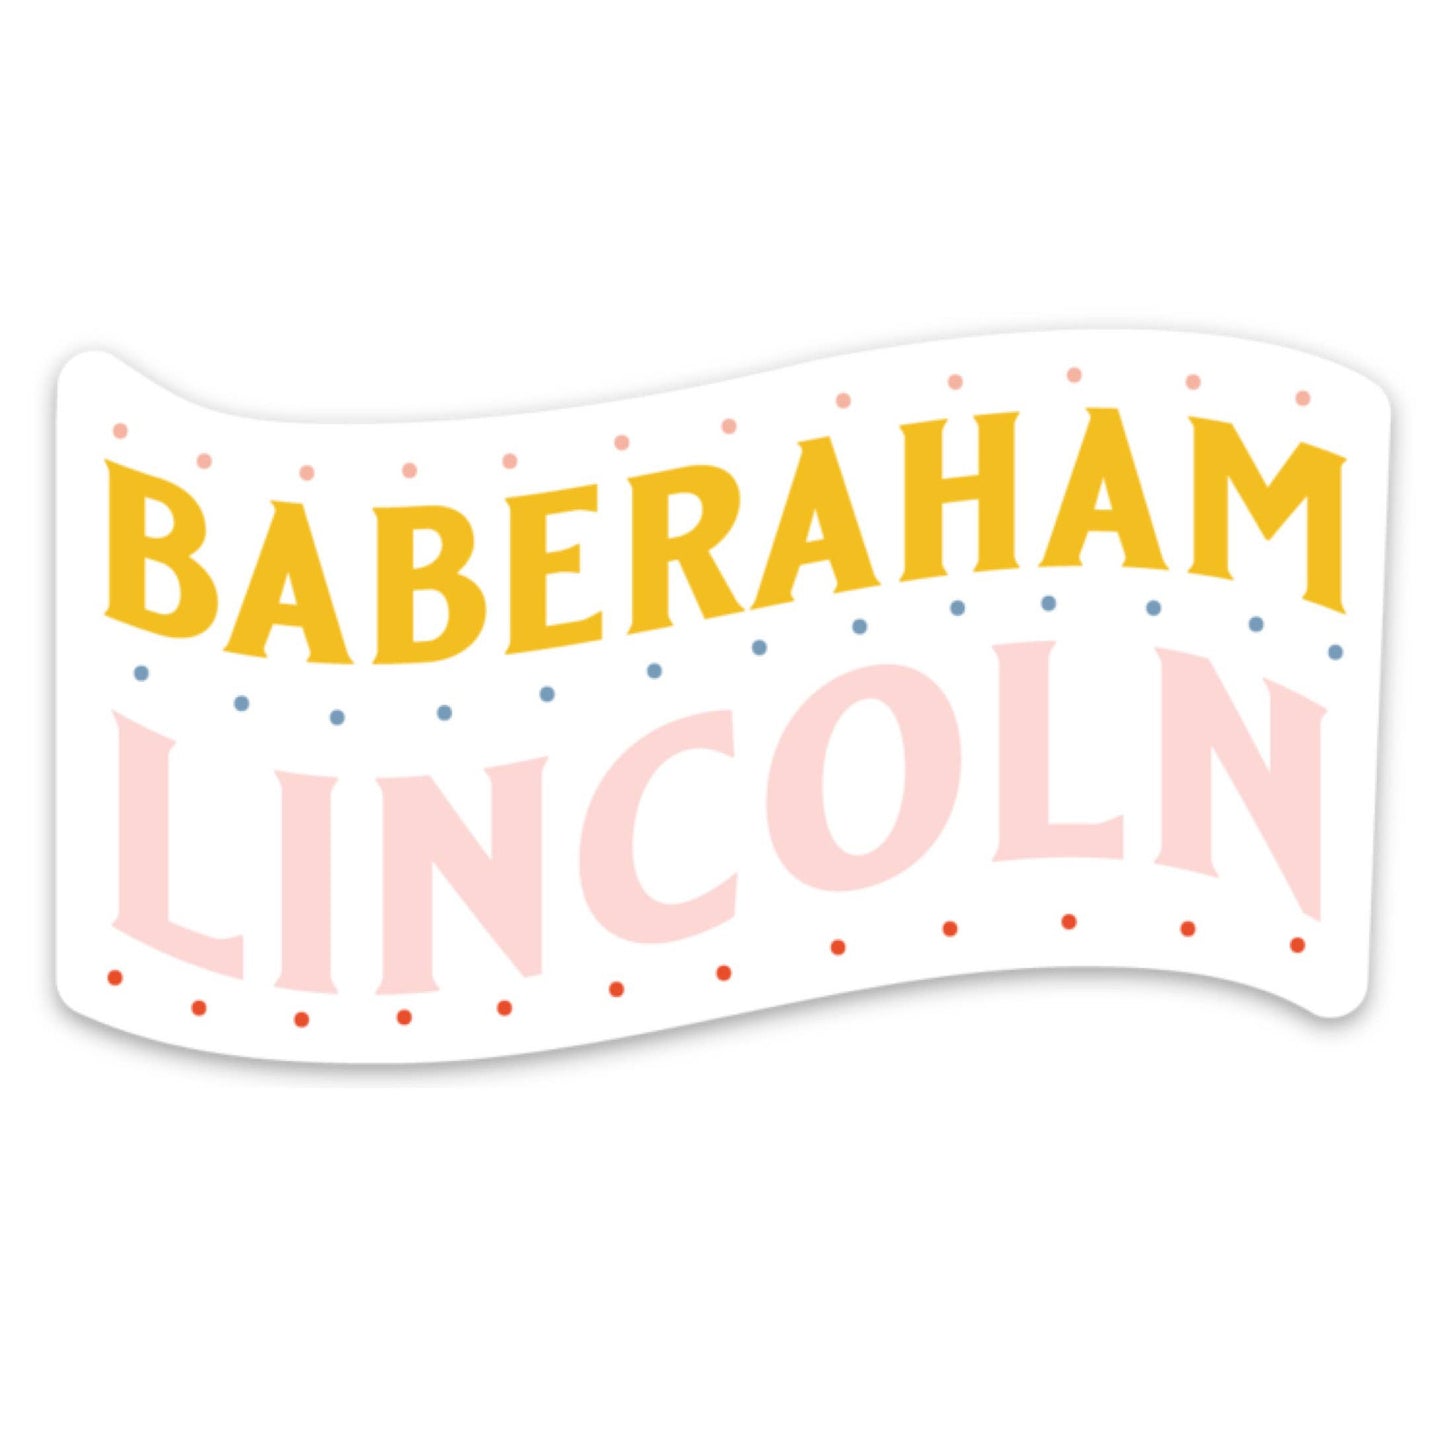 Baberaham Lincoln Sticker